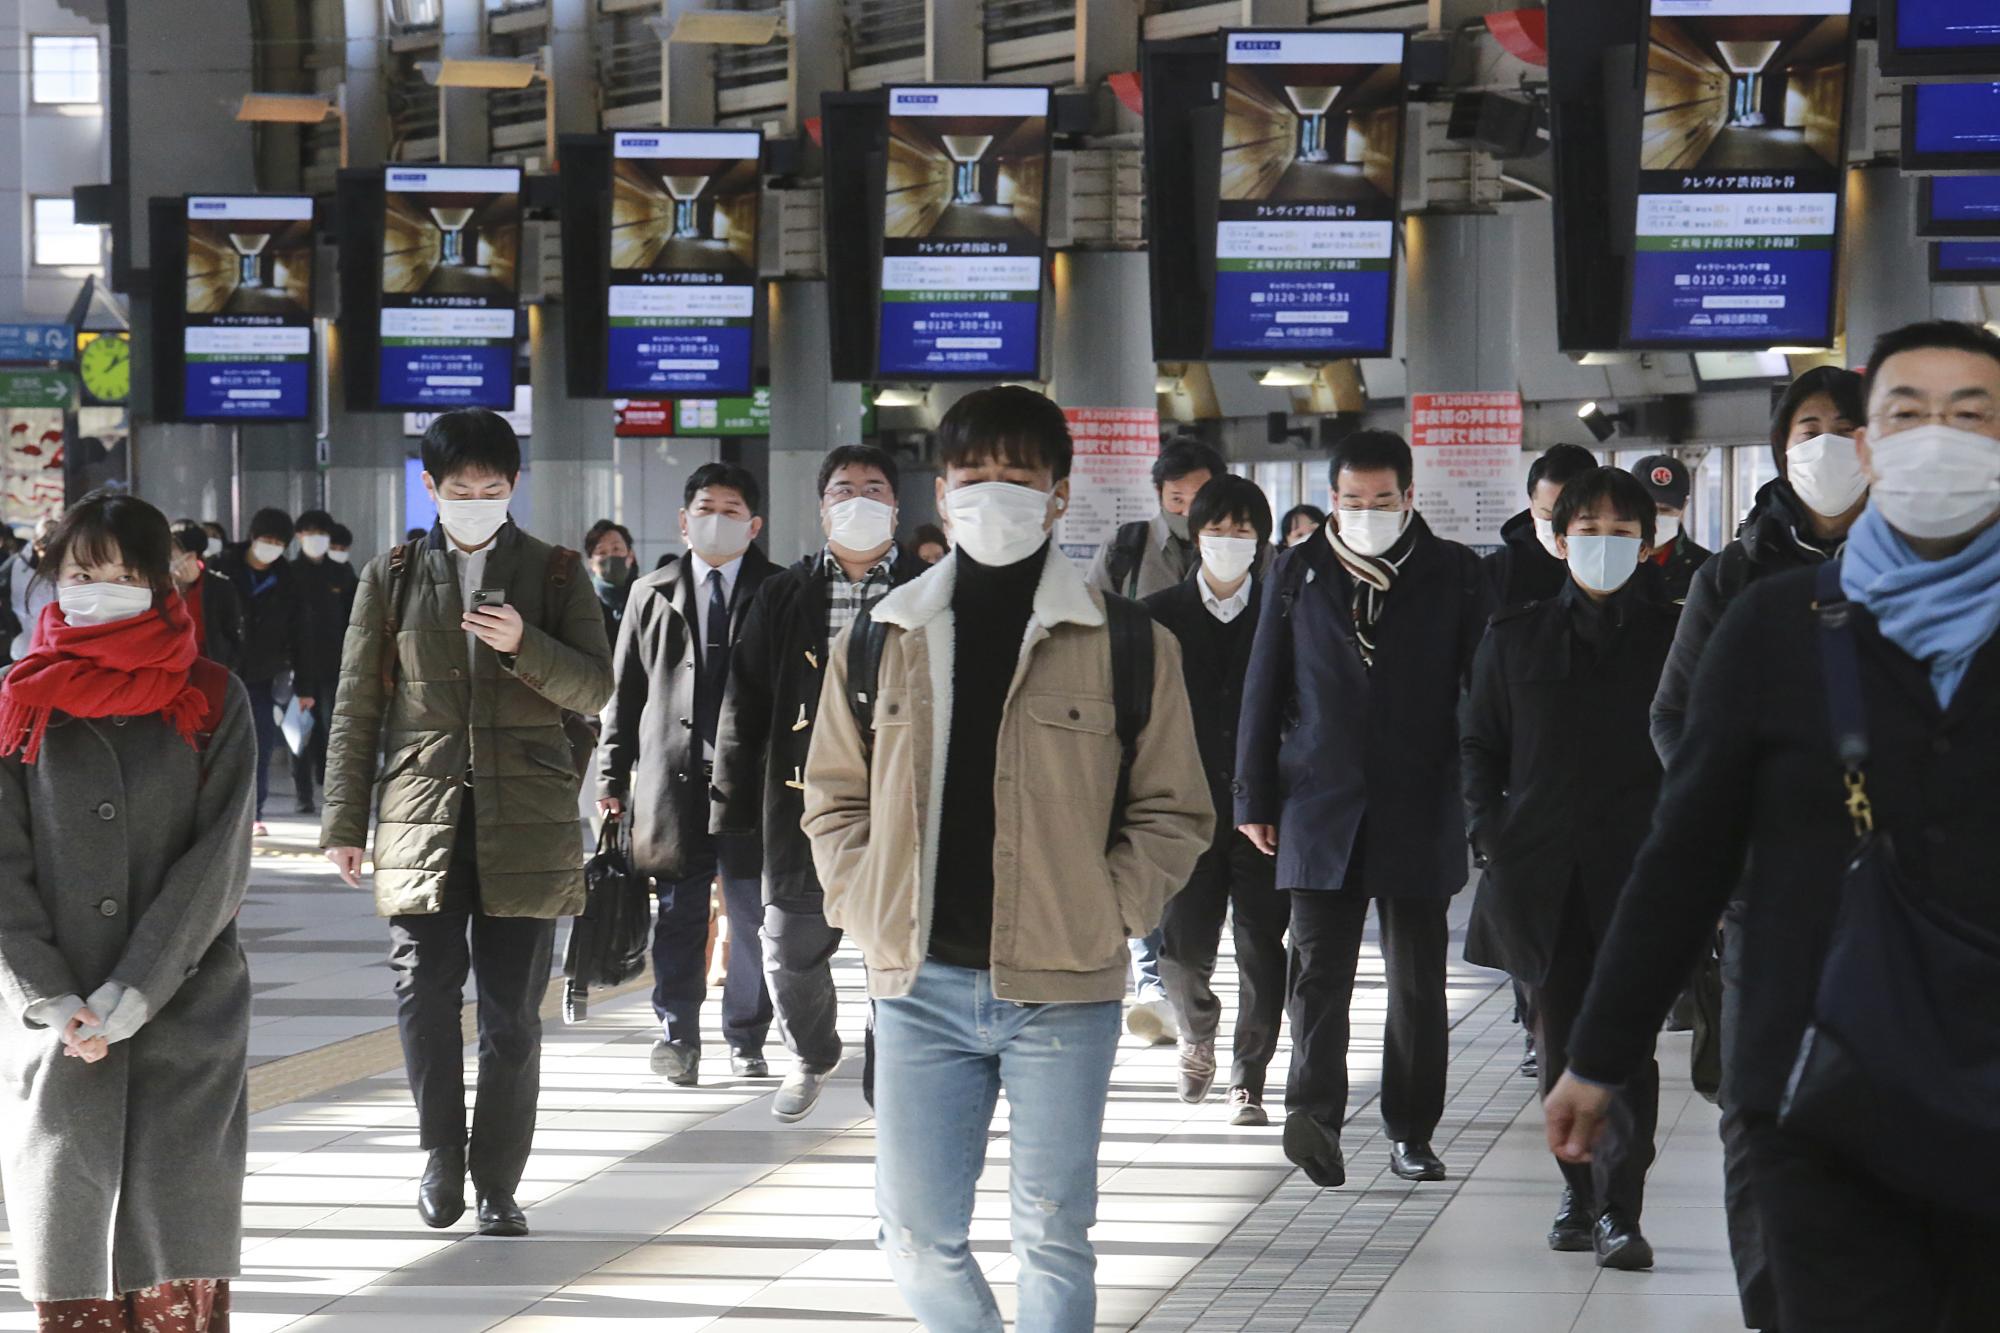 Japón multará a quien incumpla con restricciones anti-COVID. Unas personas caminan por una estación de trenes en Tokio, el 3 de febrero de 2021. (AP/Koji Sasahara)